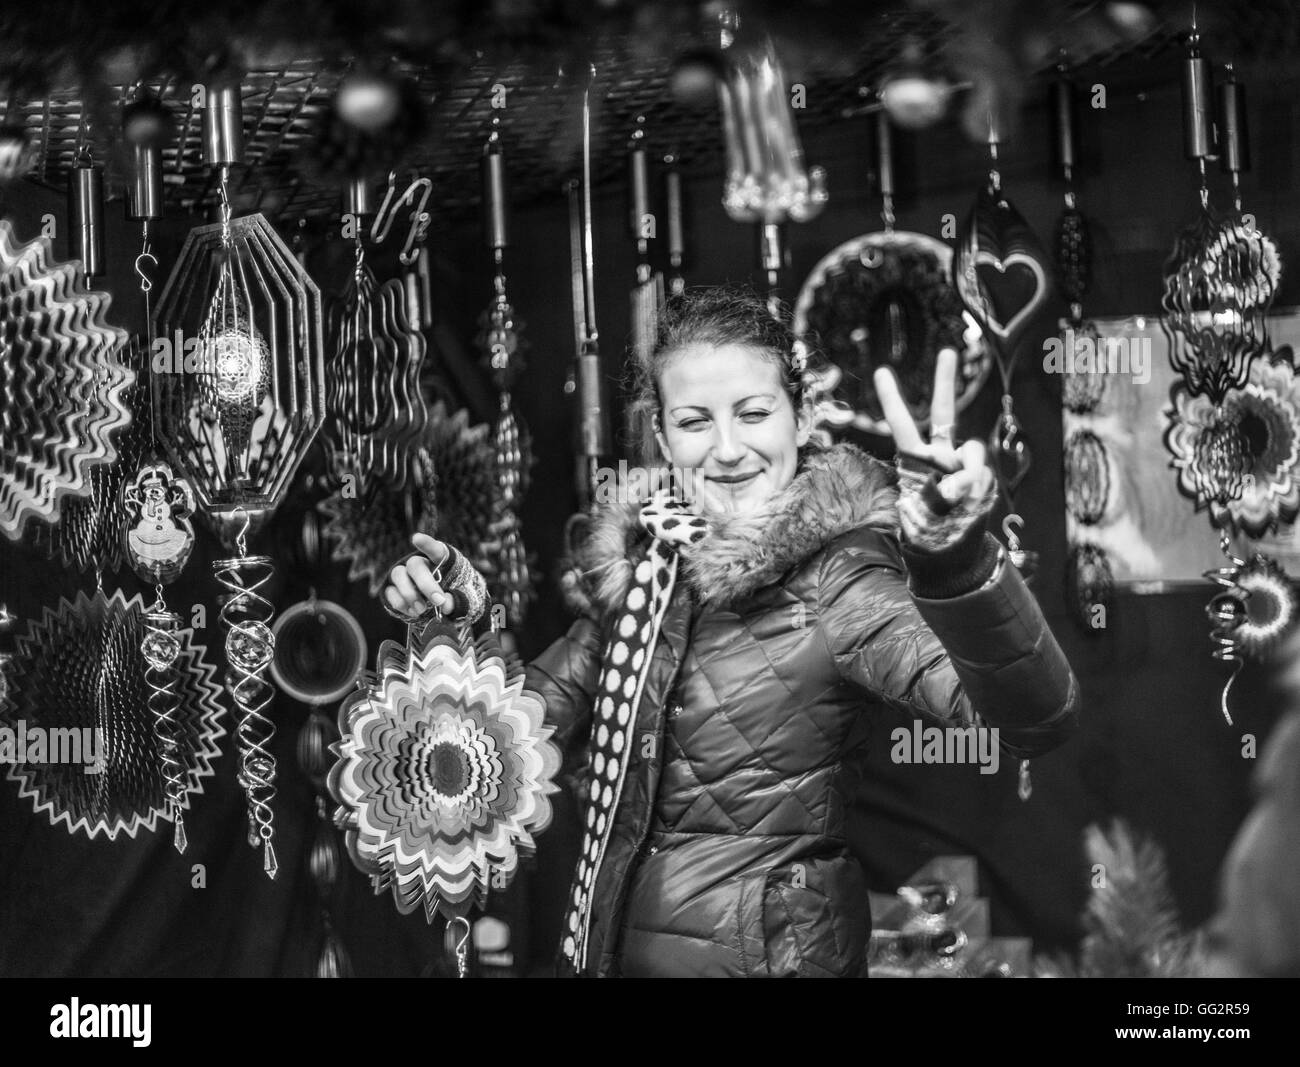 Mercatino di Natale bancarelle in Manchester- donna vendita fascini del vento Foto Stock